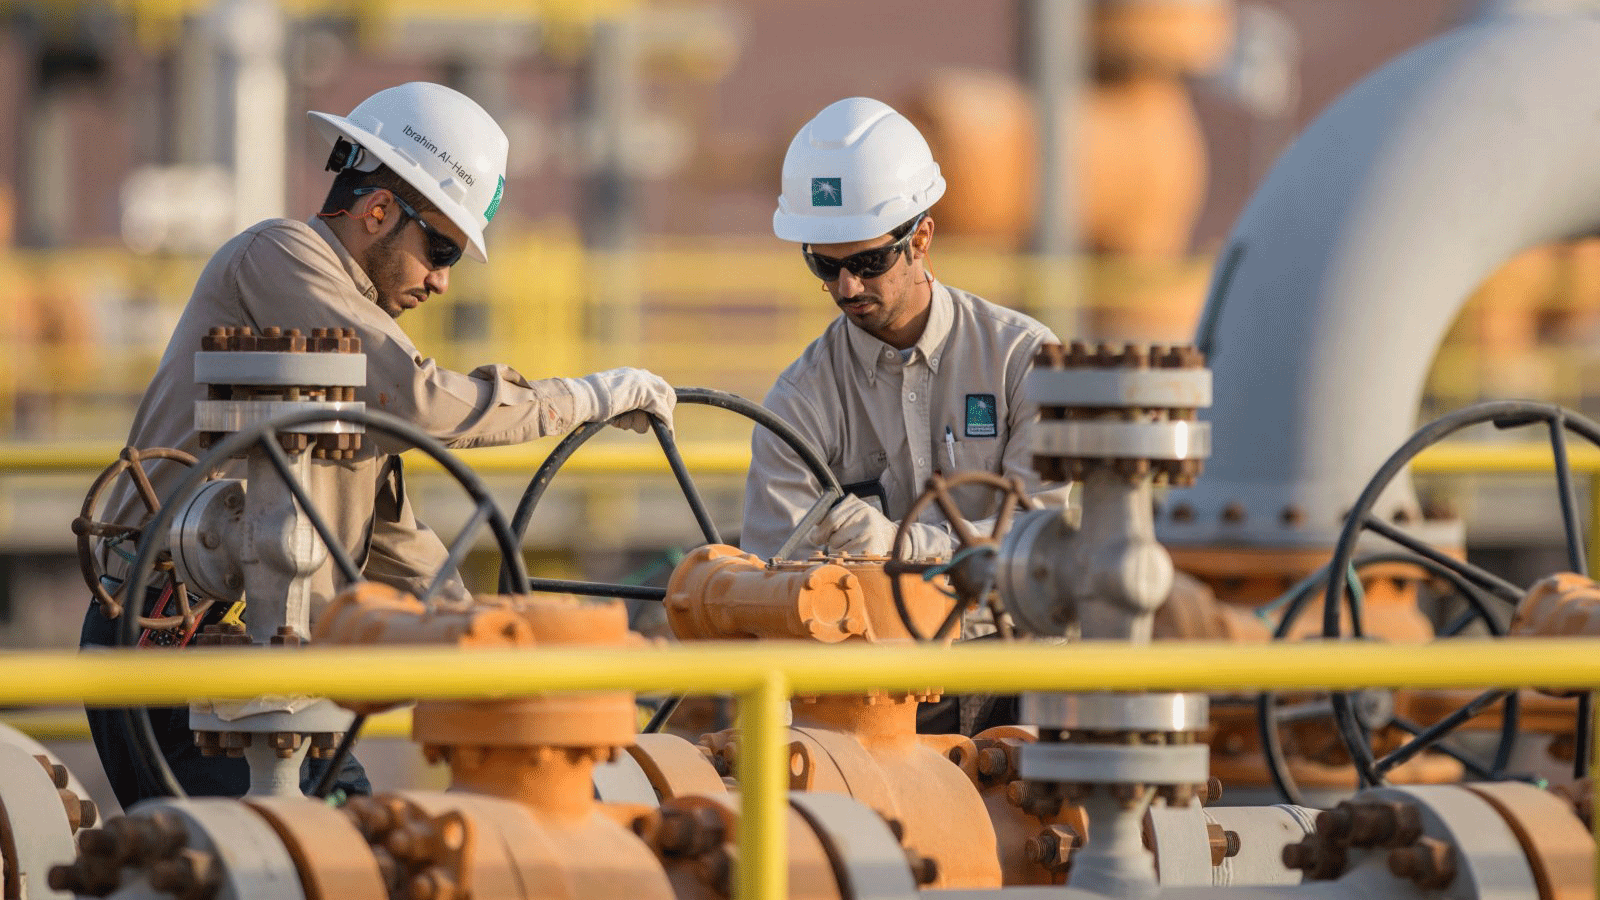 مهندسون يعملون في منشأة أرامكو السعودية، المملكة العربية السعودية، 19 كانون الأول/ديسمبر 2016